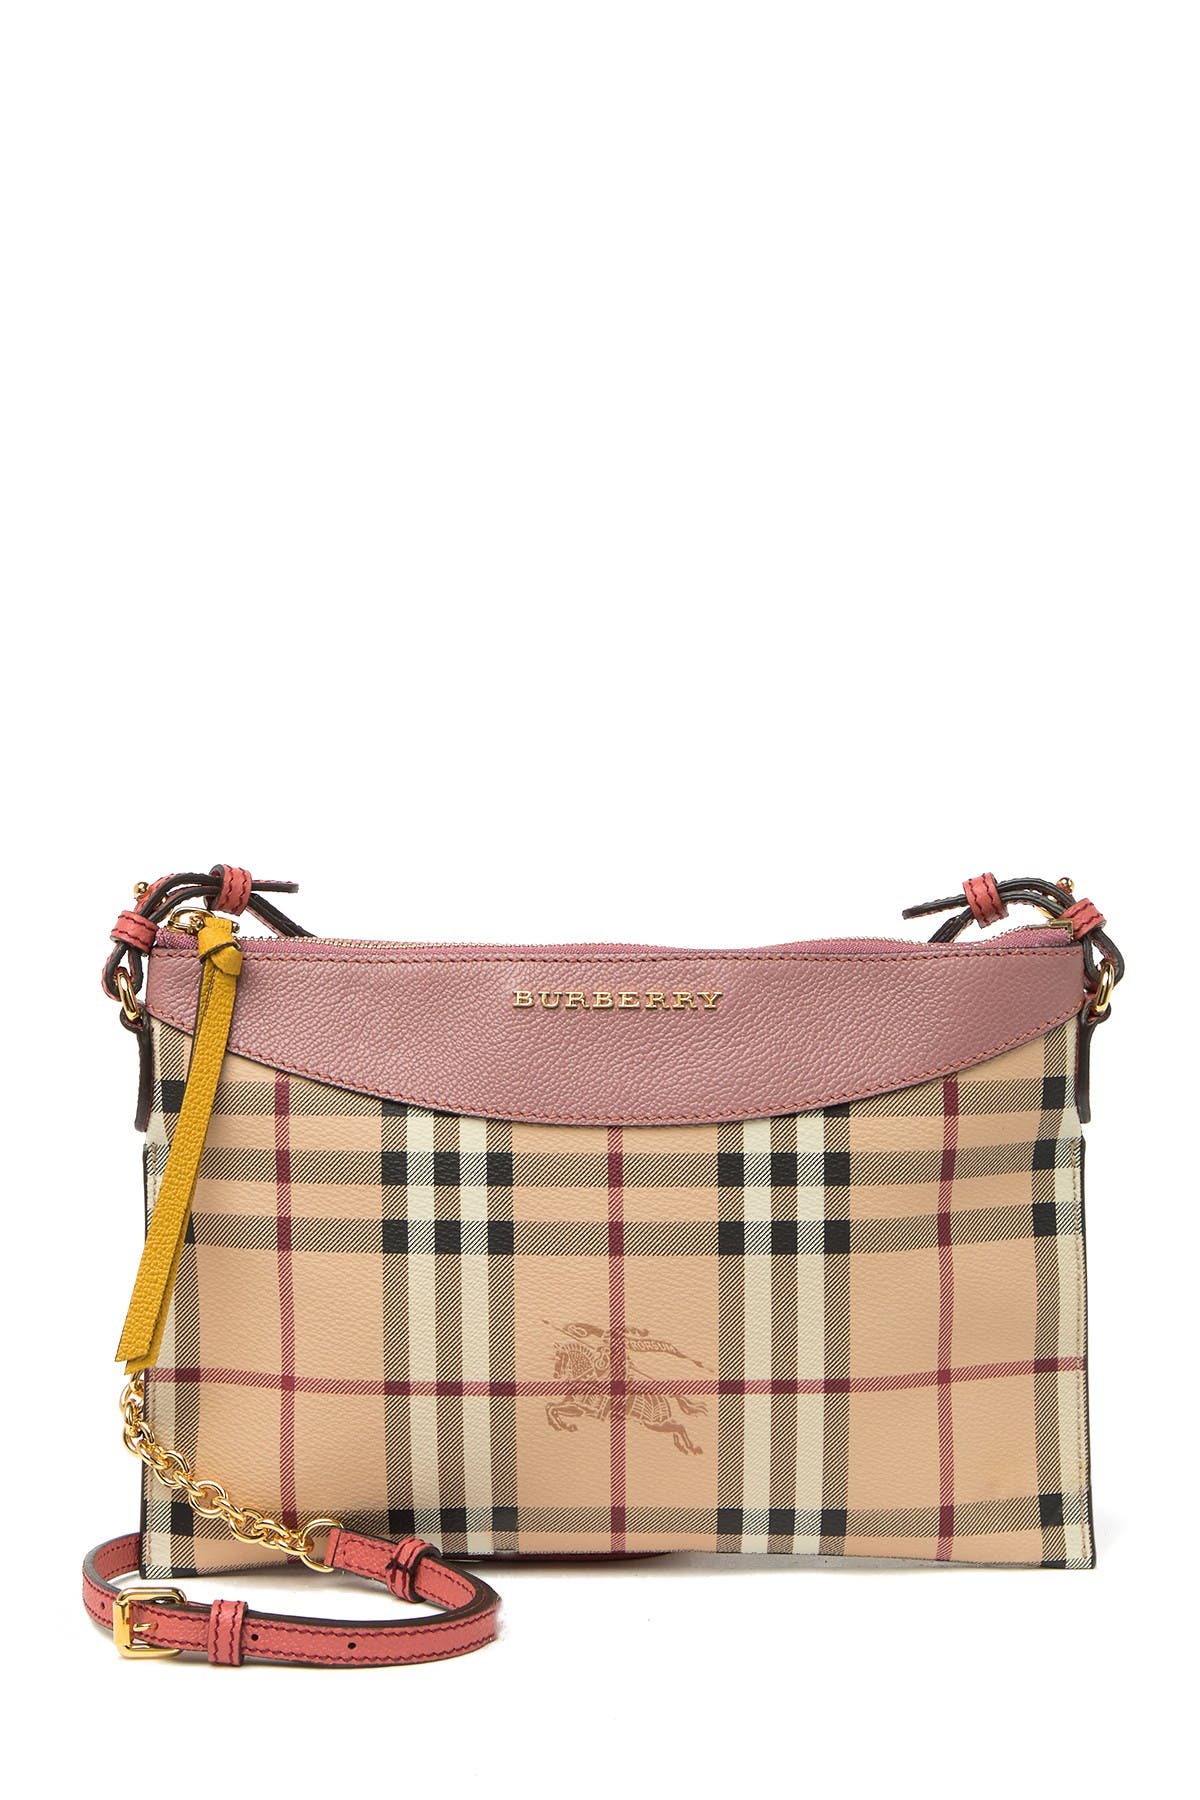 Burberry | Peyton Check Crossbody Bag 